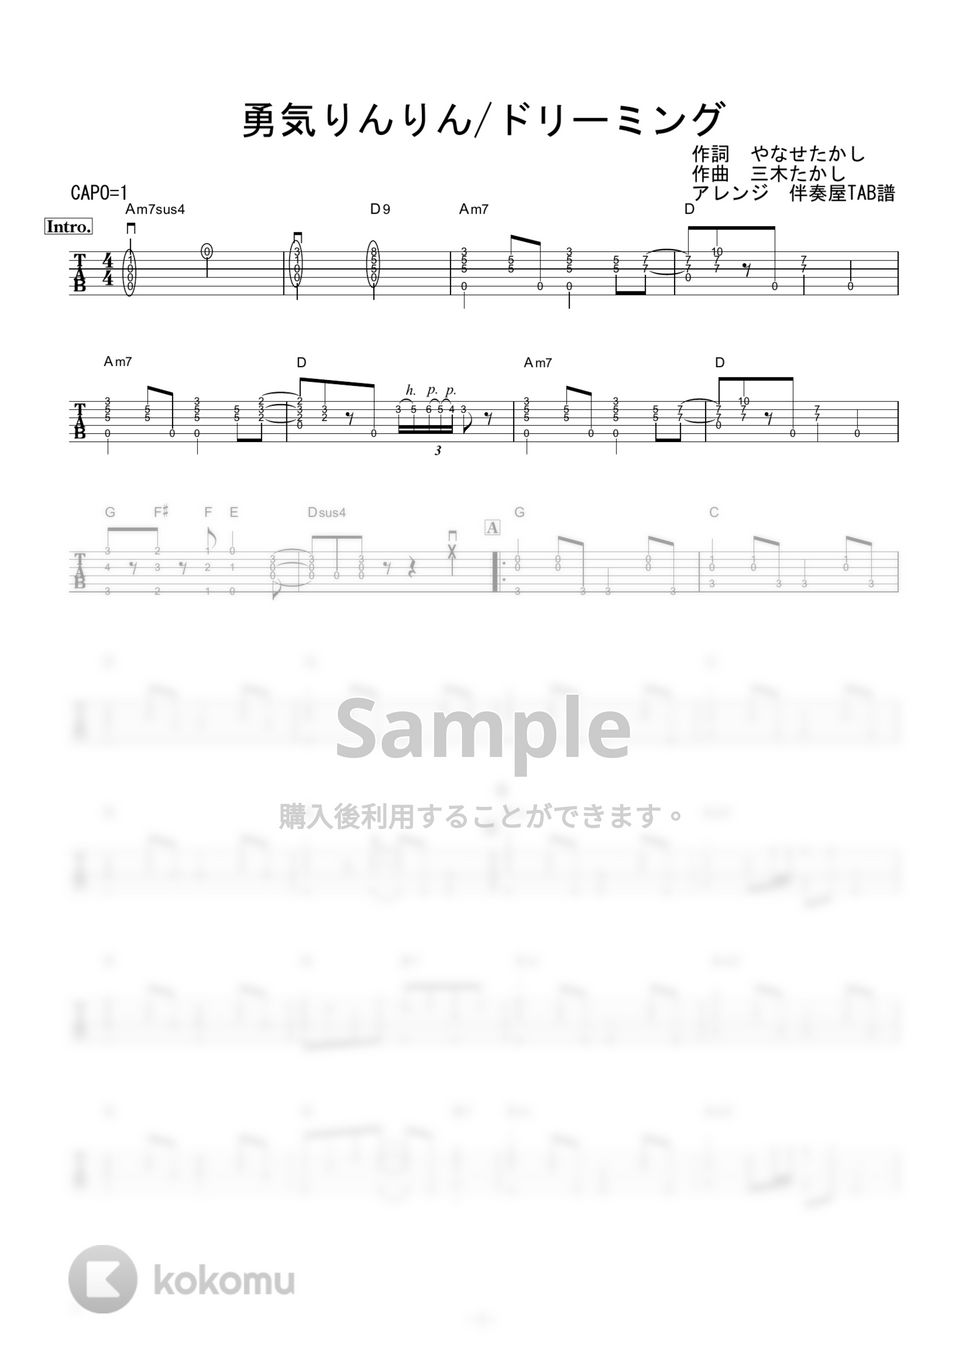 ドリーミング - 勇気りんりん (ギター伴奏/イントロ・間奏ソロギター) by 伴奏屋TAB譜